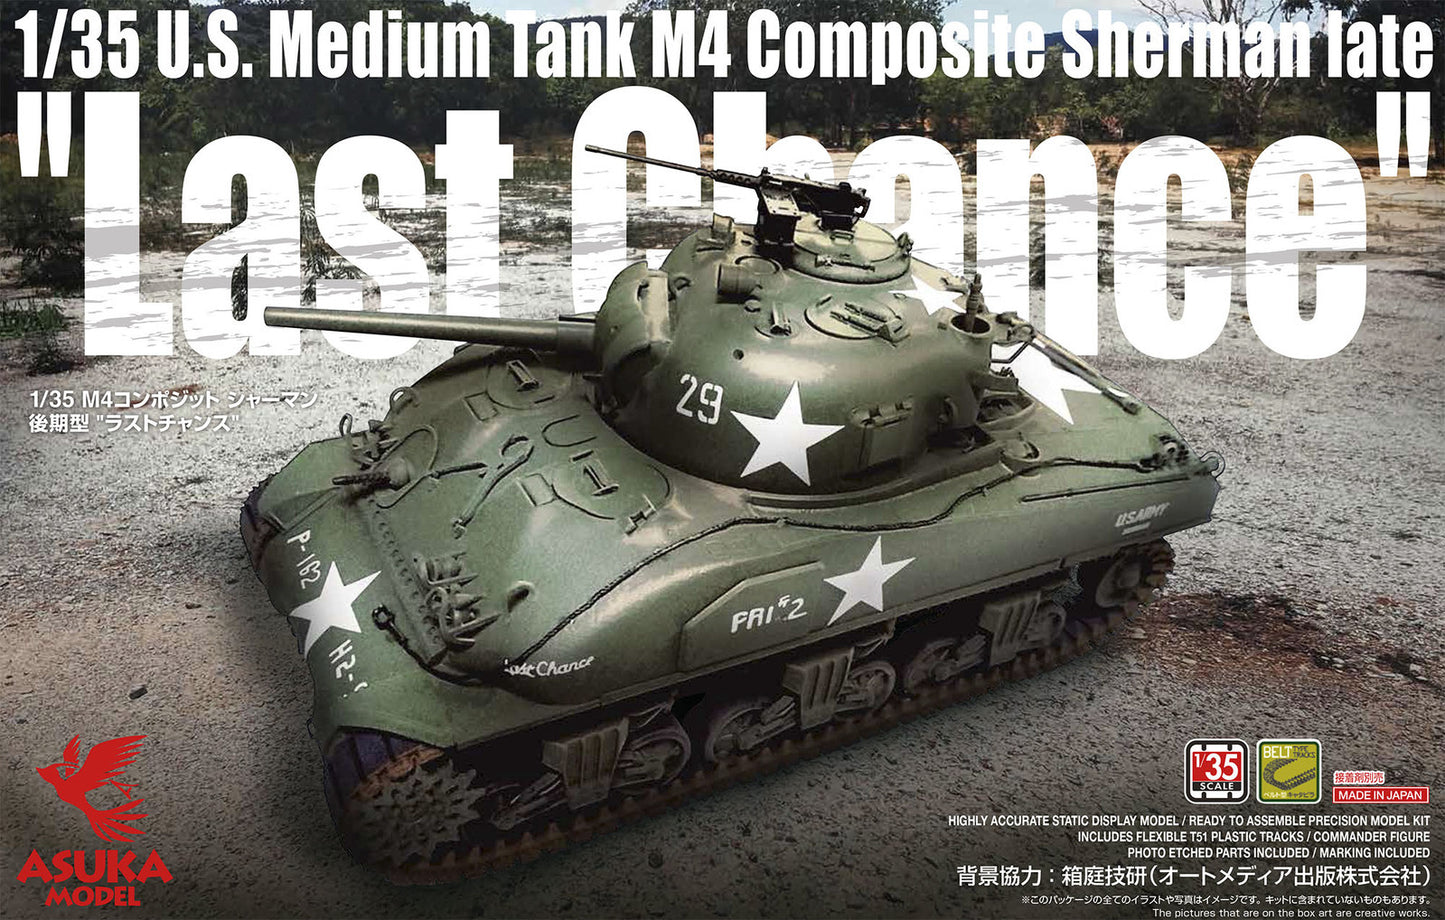 Asuka 1/35 U.S. Medium Tank M4 Composite Sherman Late "Last Chance" Plastic Model Kit